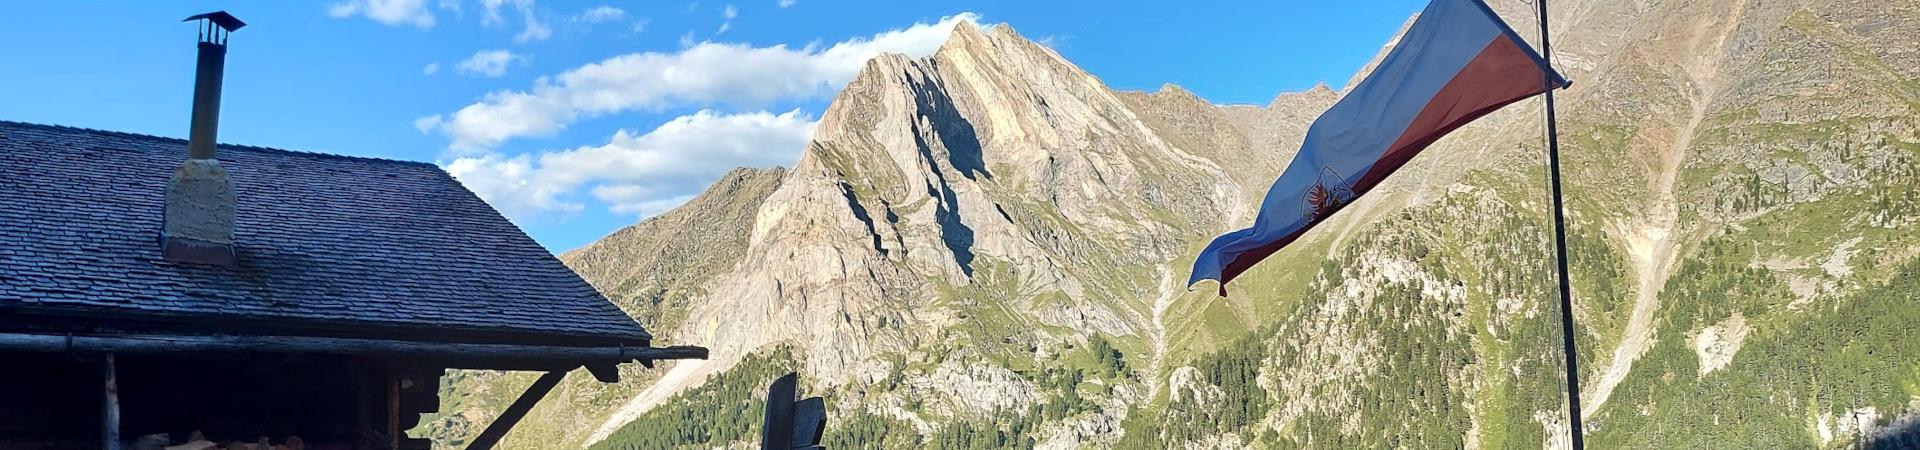 Rifugio+alpino+con+bandiera+issata+e+montagna+sullo+sfondo